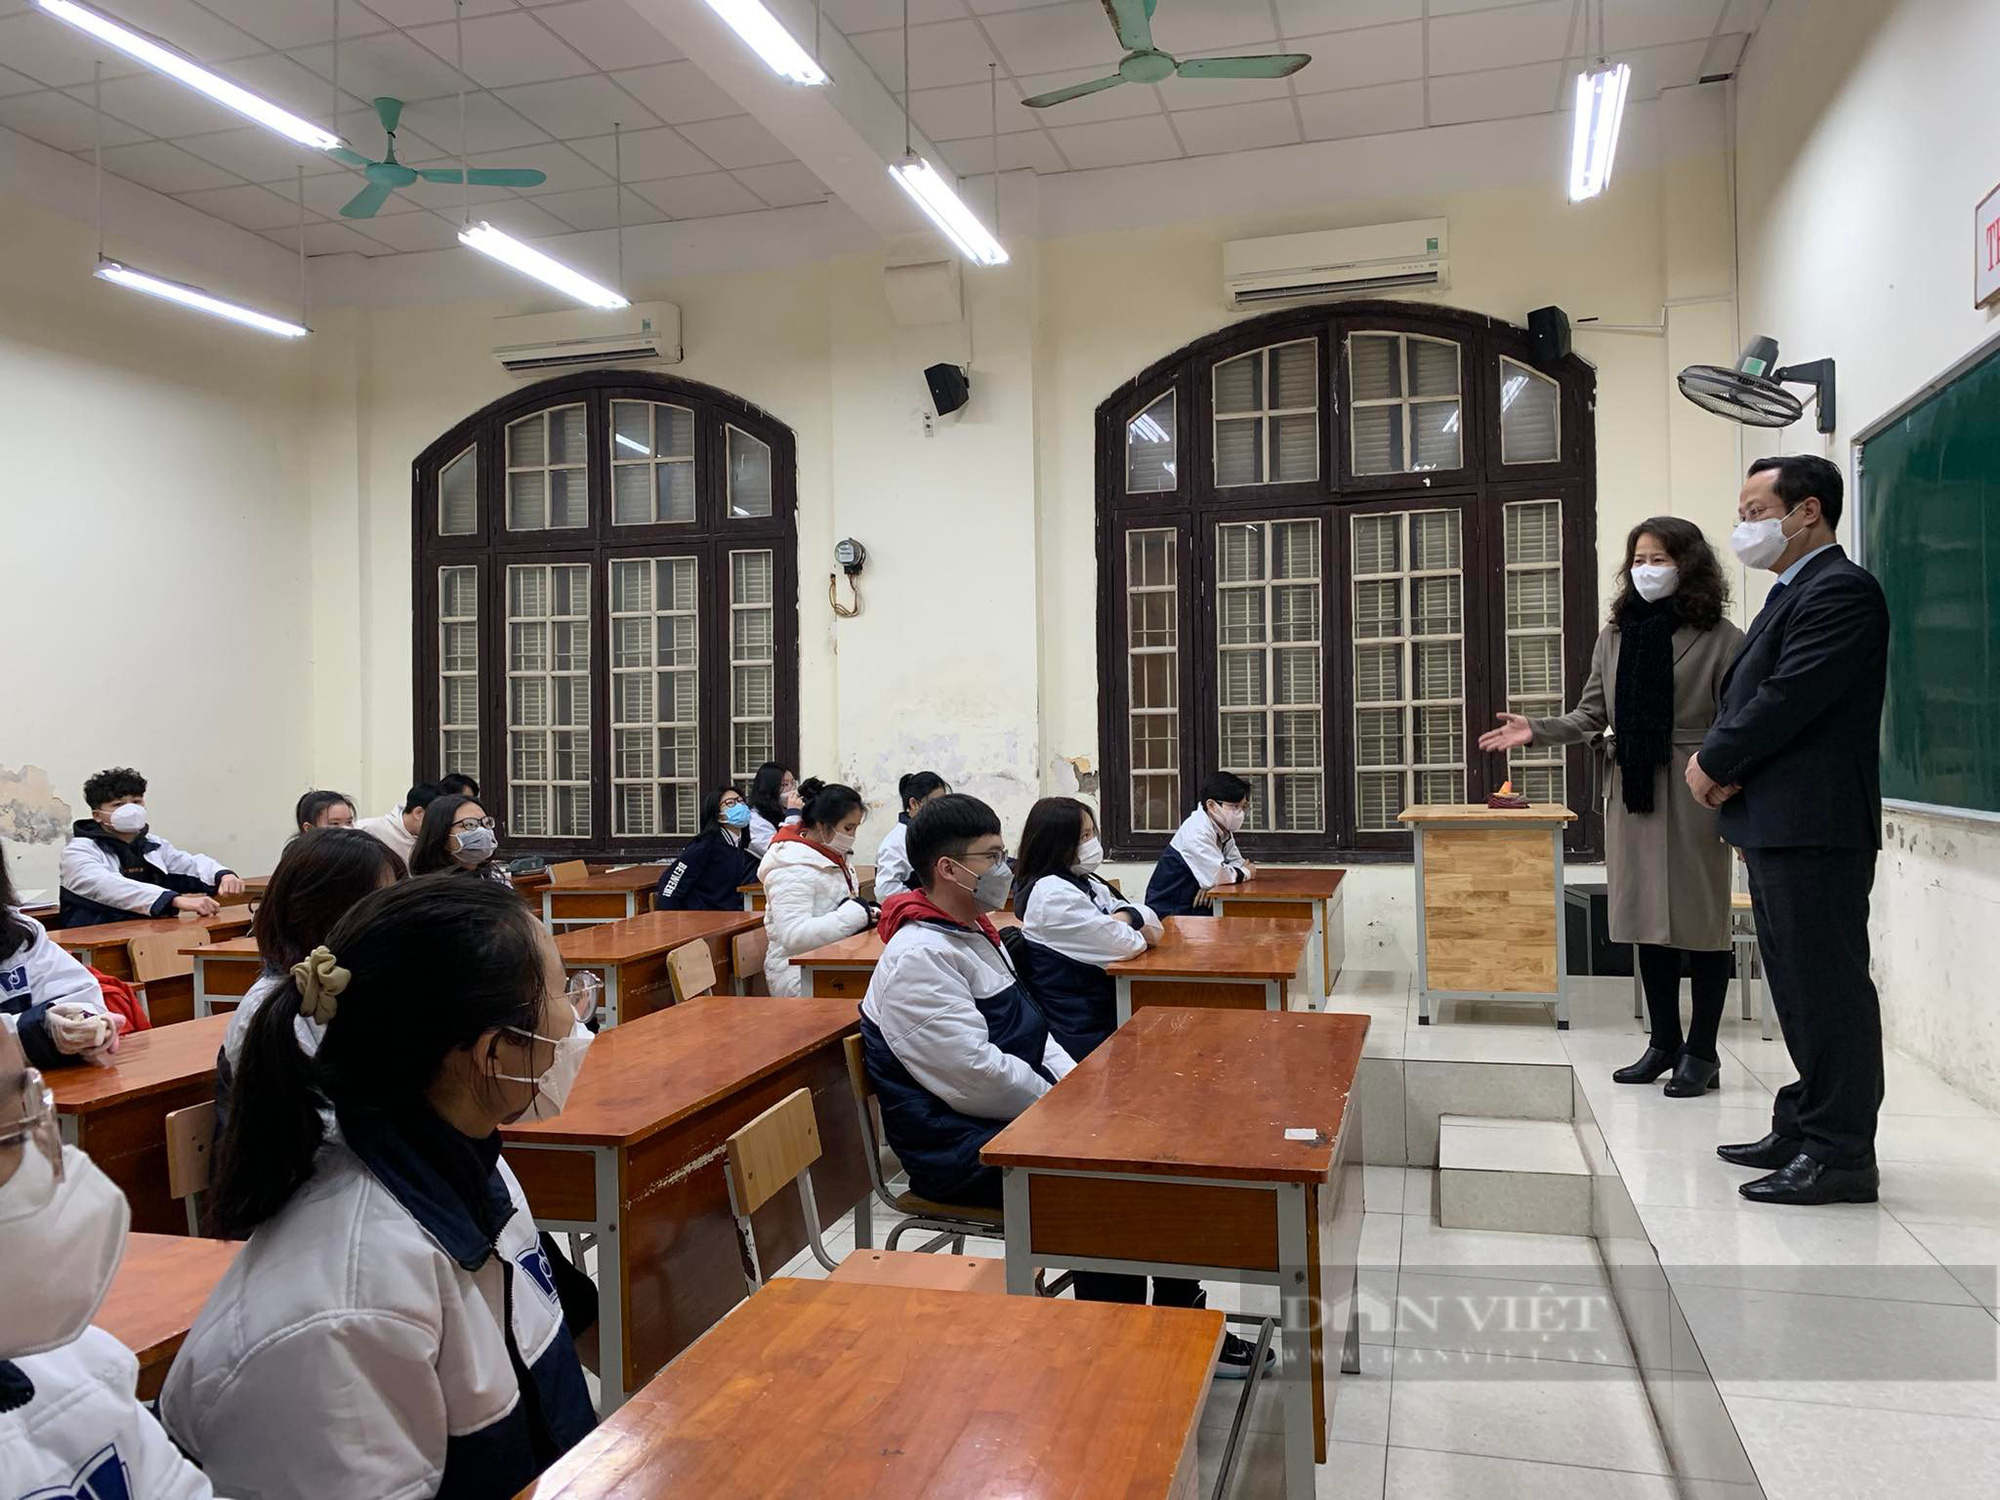 Học sinh Hà Nội đi học lại ngày 8/2: Nhà trường chuẩn bị kỹ càng, học sinh vui mừng nhận lì xì đầu năm - Ảnh 6.